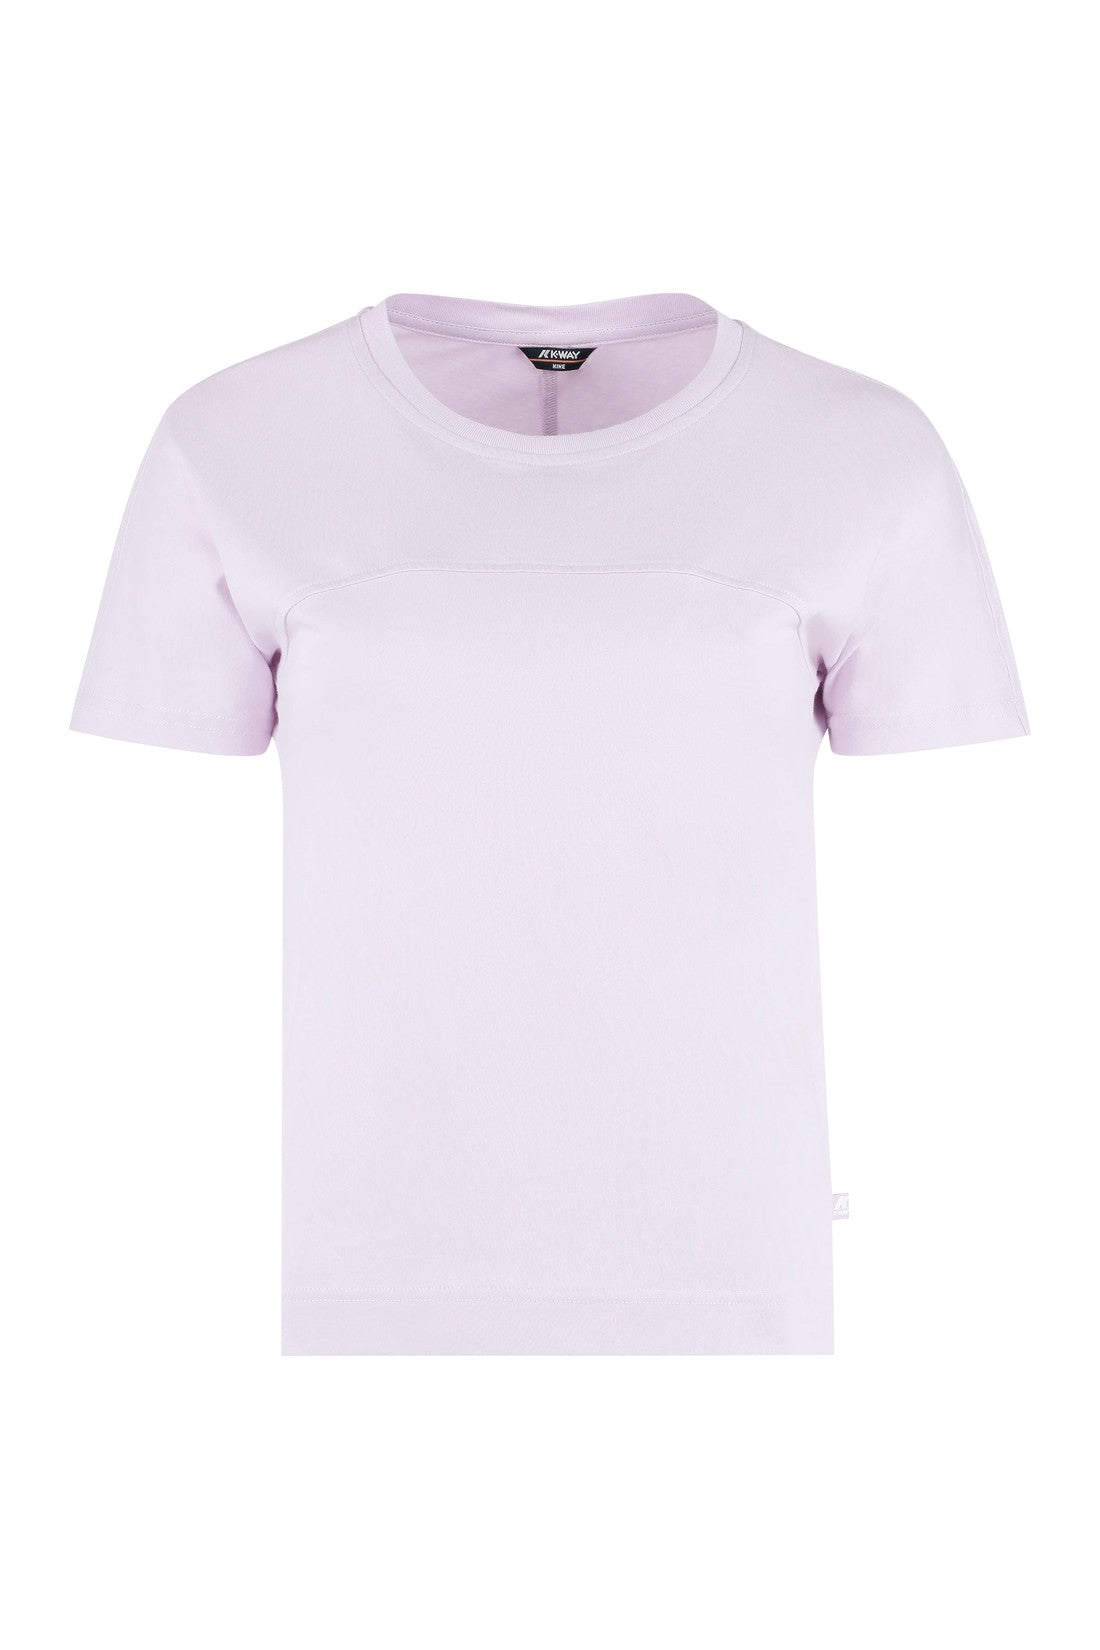 K-Way-OUTLET-SALE-Gizelle cotton T-shirt-ARCHIVIST